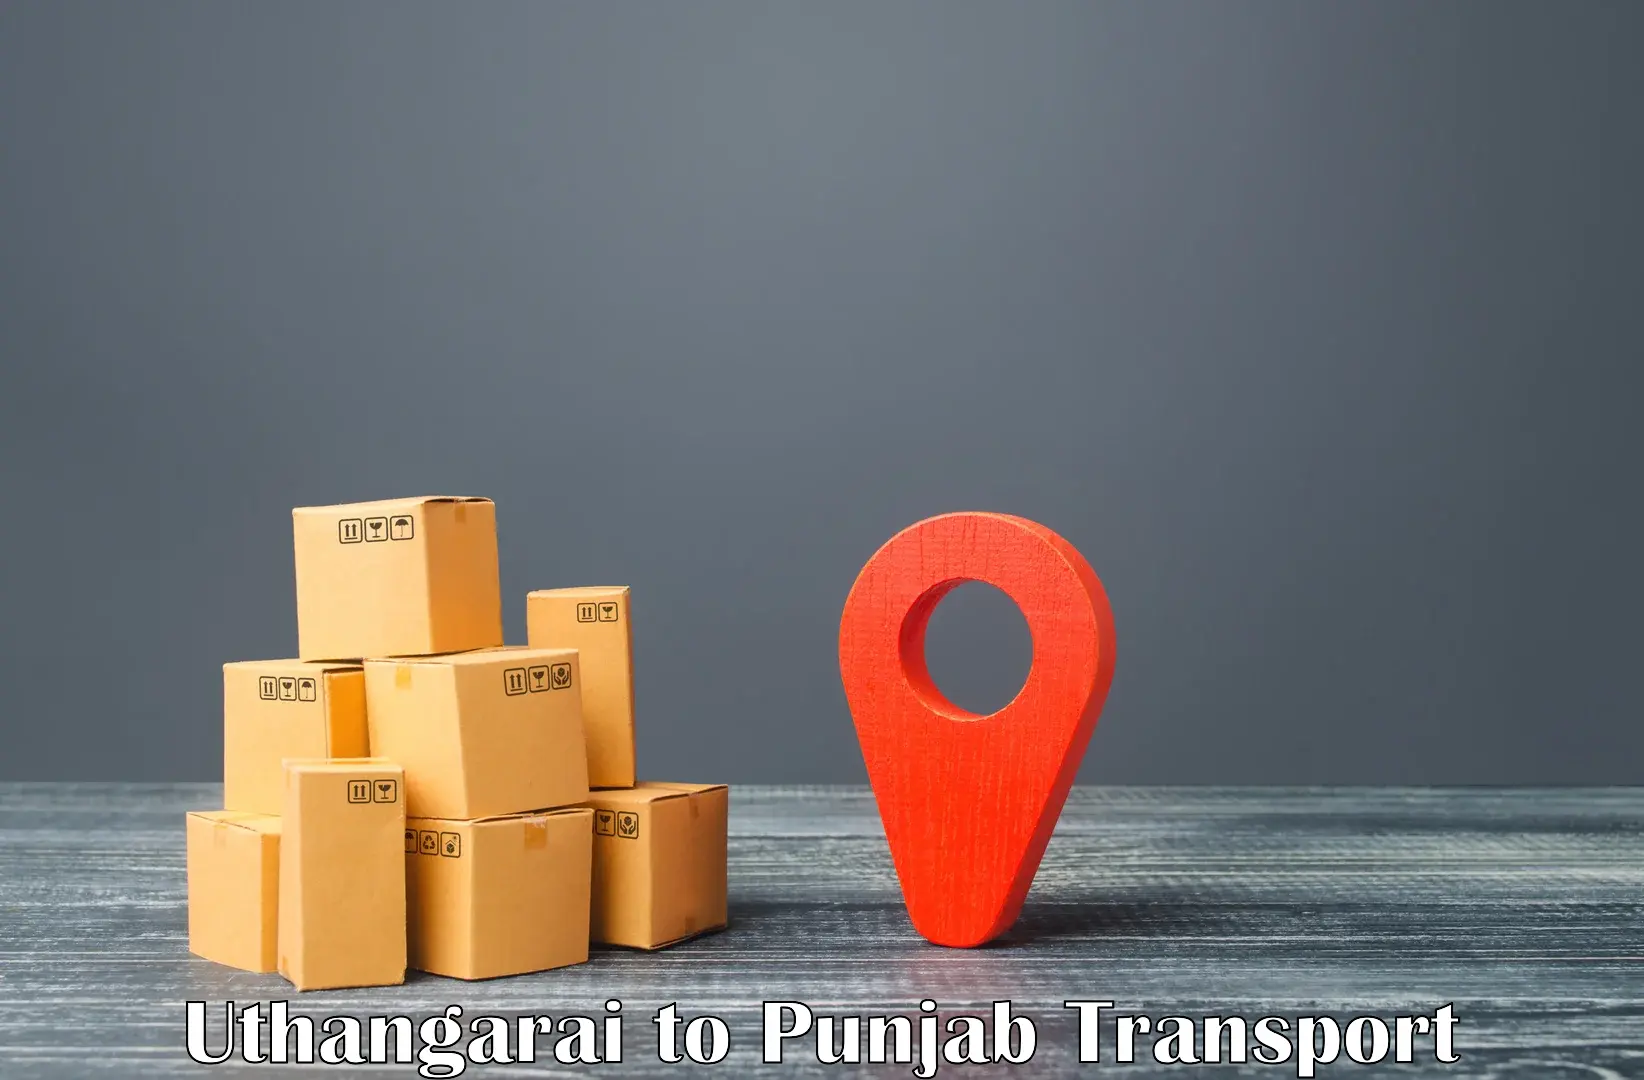 Best transport services in India Uthangarai to Machhiwara